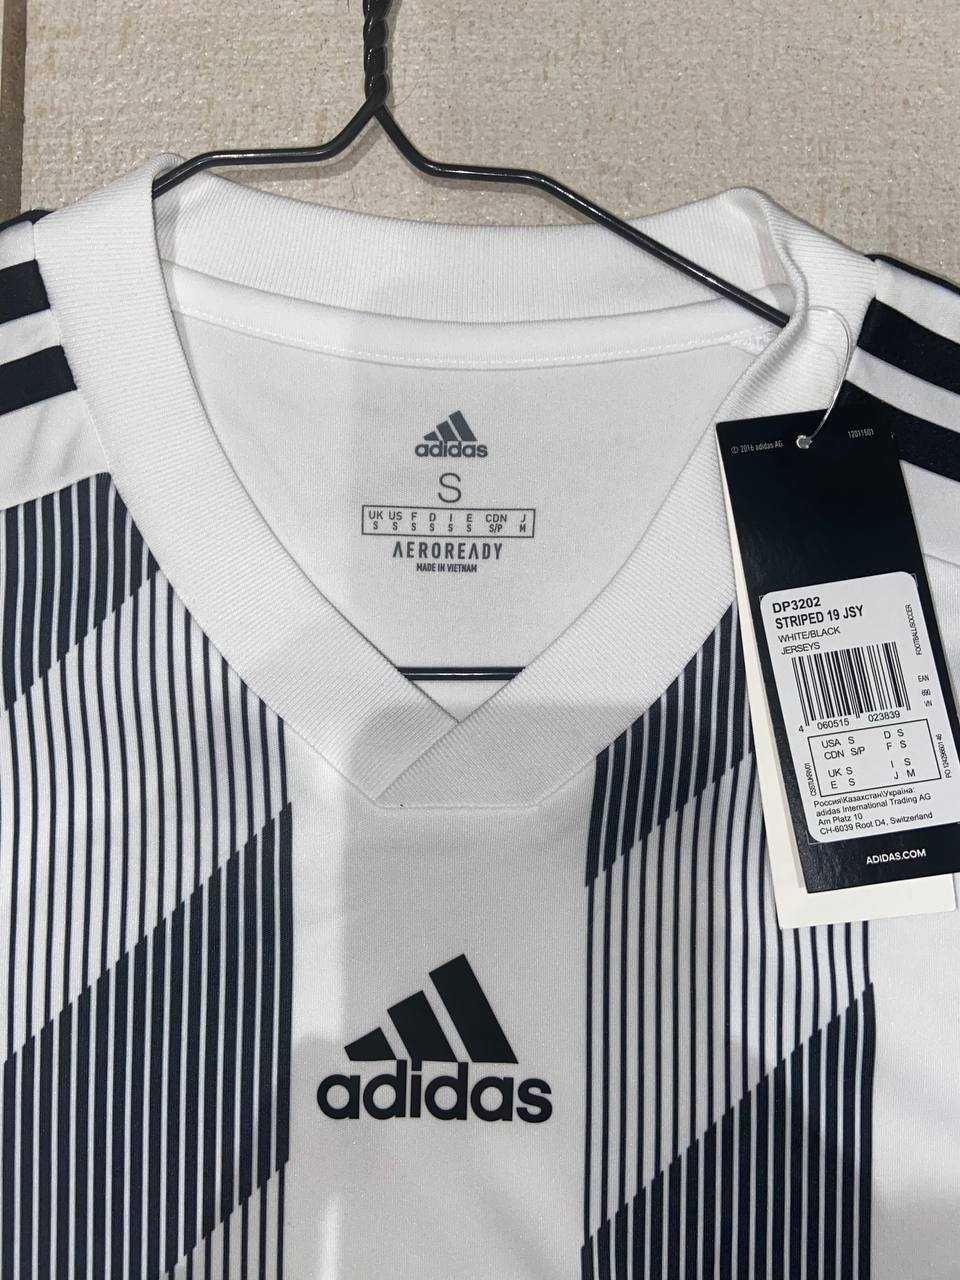 Футболка мужская Adidas striped 19 jsy (новая)